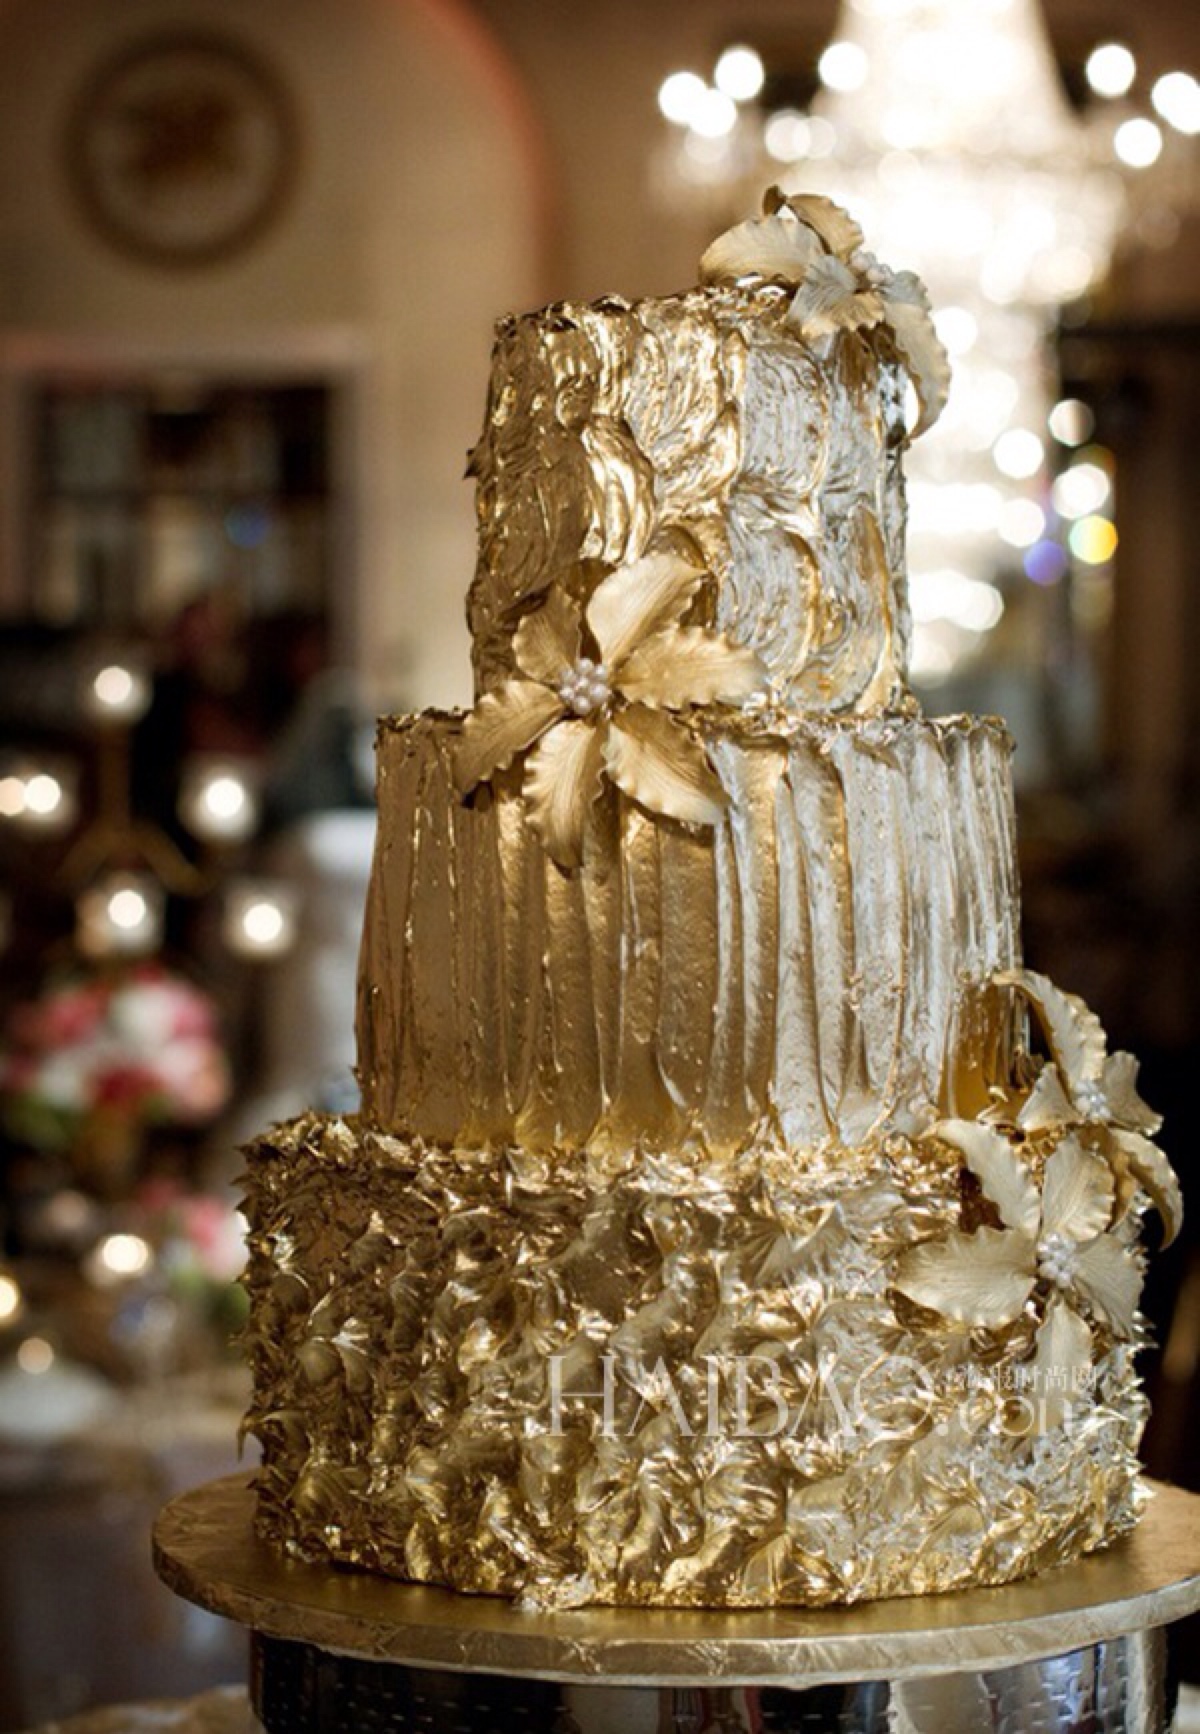 翻糖 婚礼 鲜花 金色 蛋糕 甜点 堆糖,美图壁纸兴趣社区